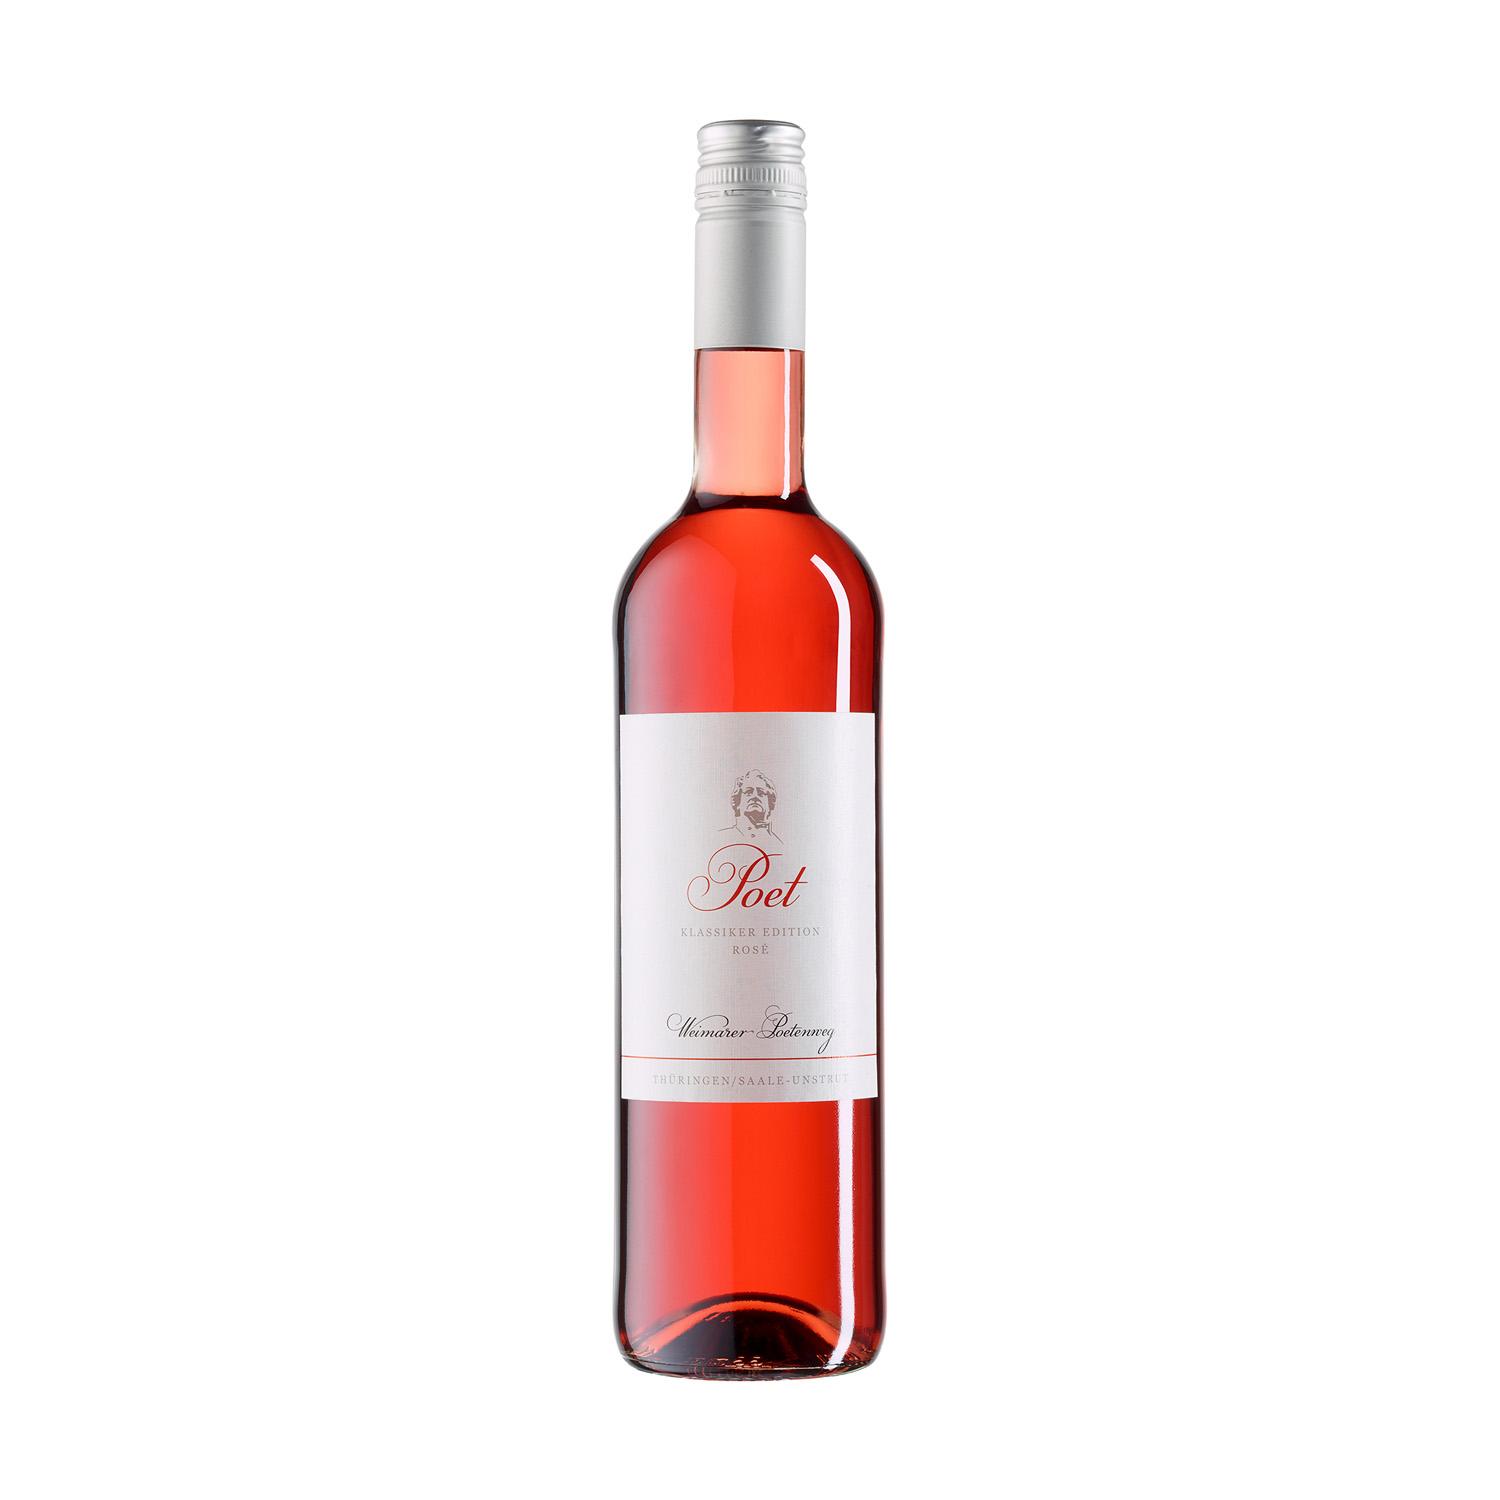 Eine 0,75 Liter fruchtbetonte Cuvée Flasche Poet Rosé halbtrocken ausgebaut